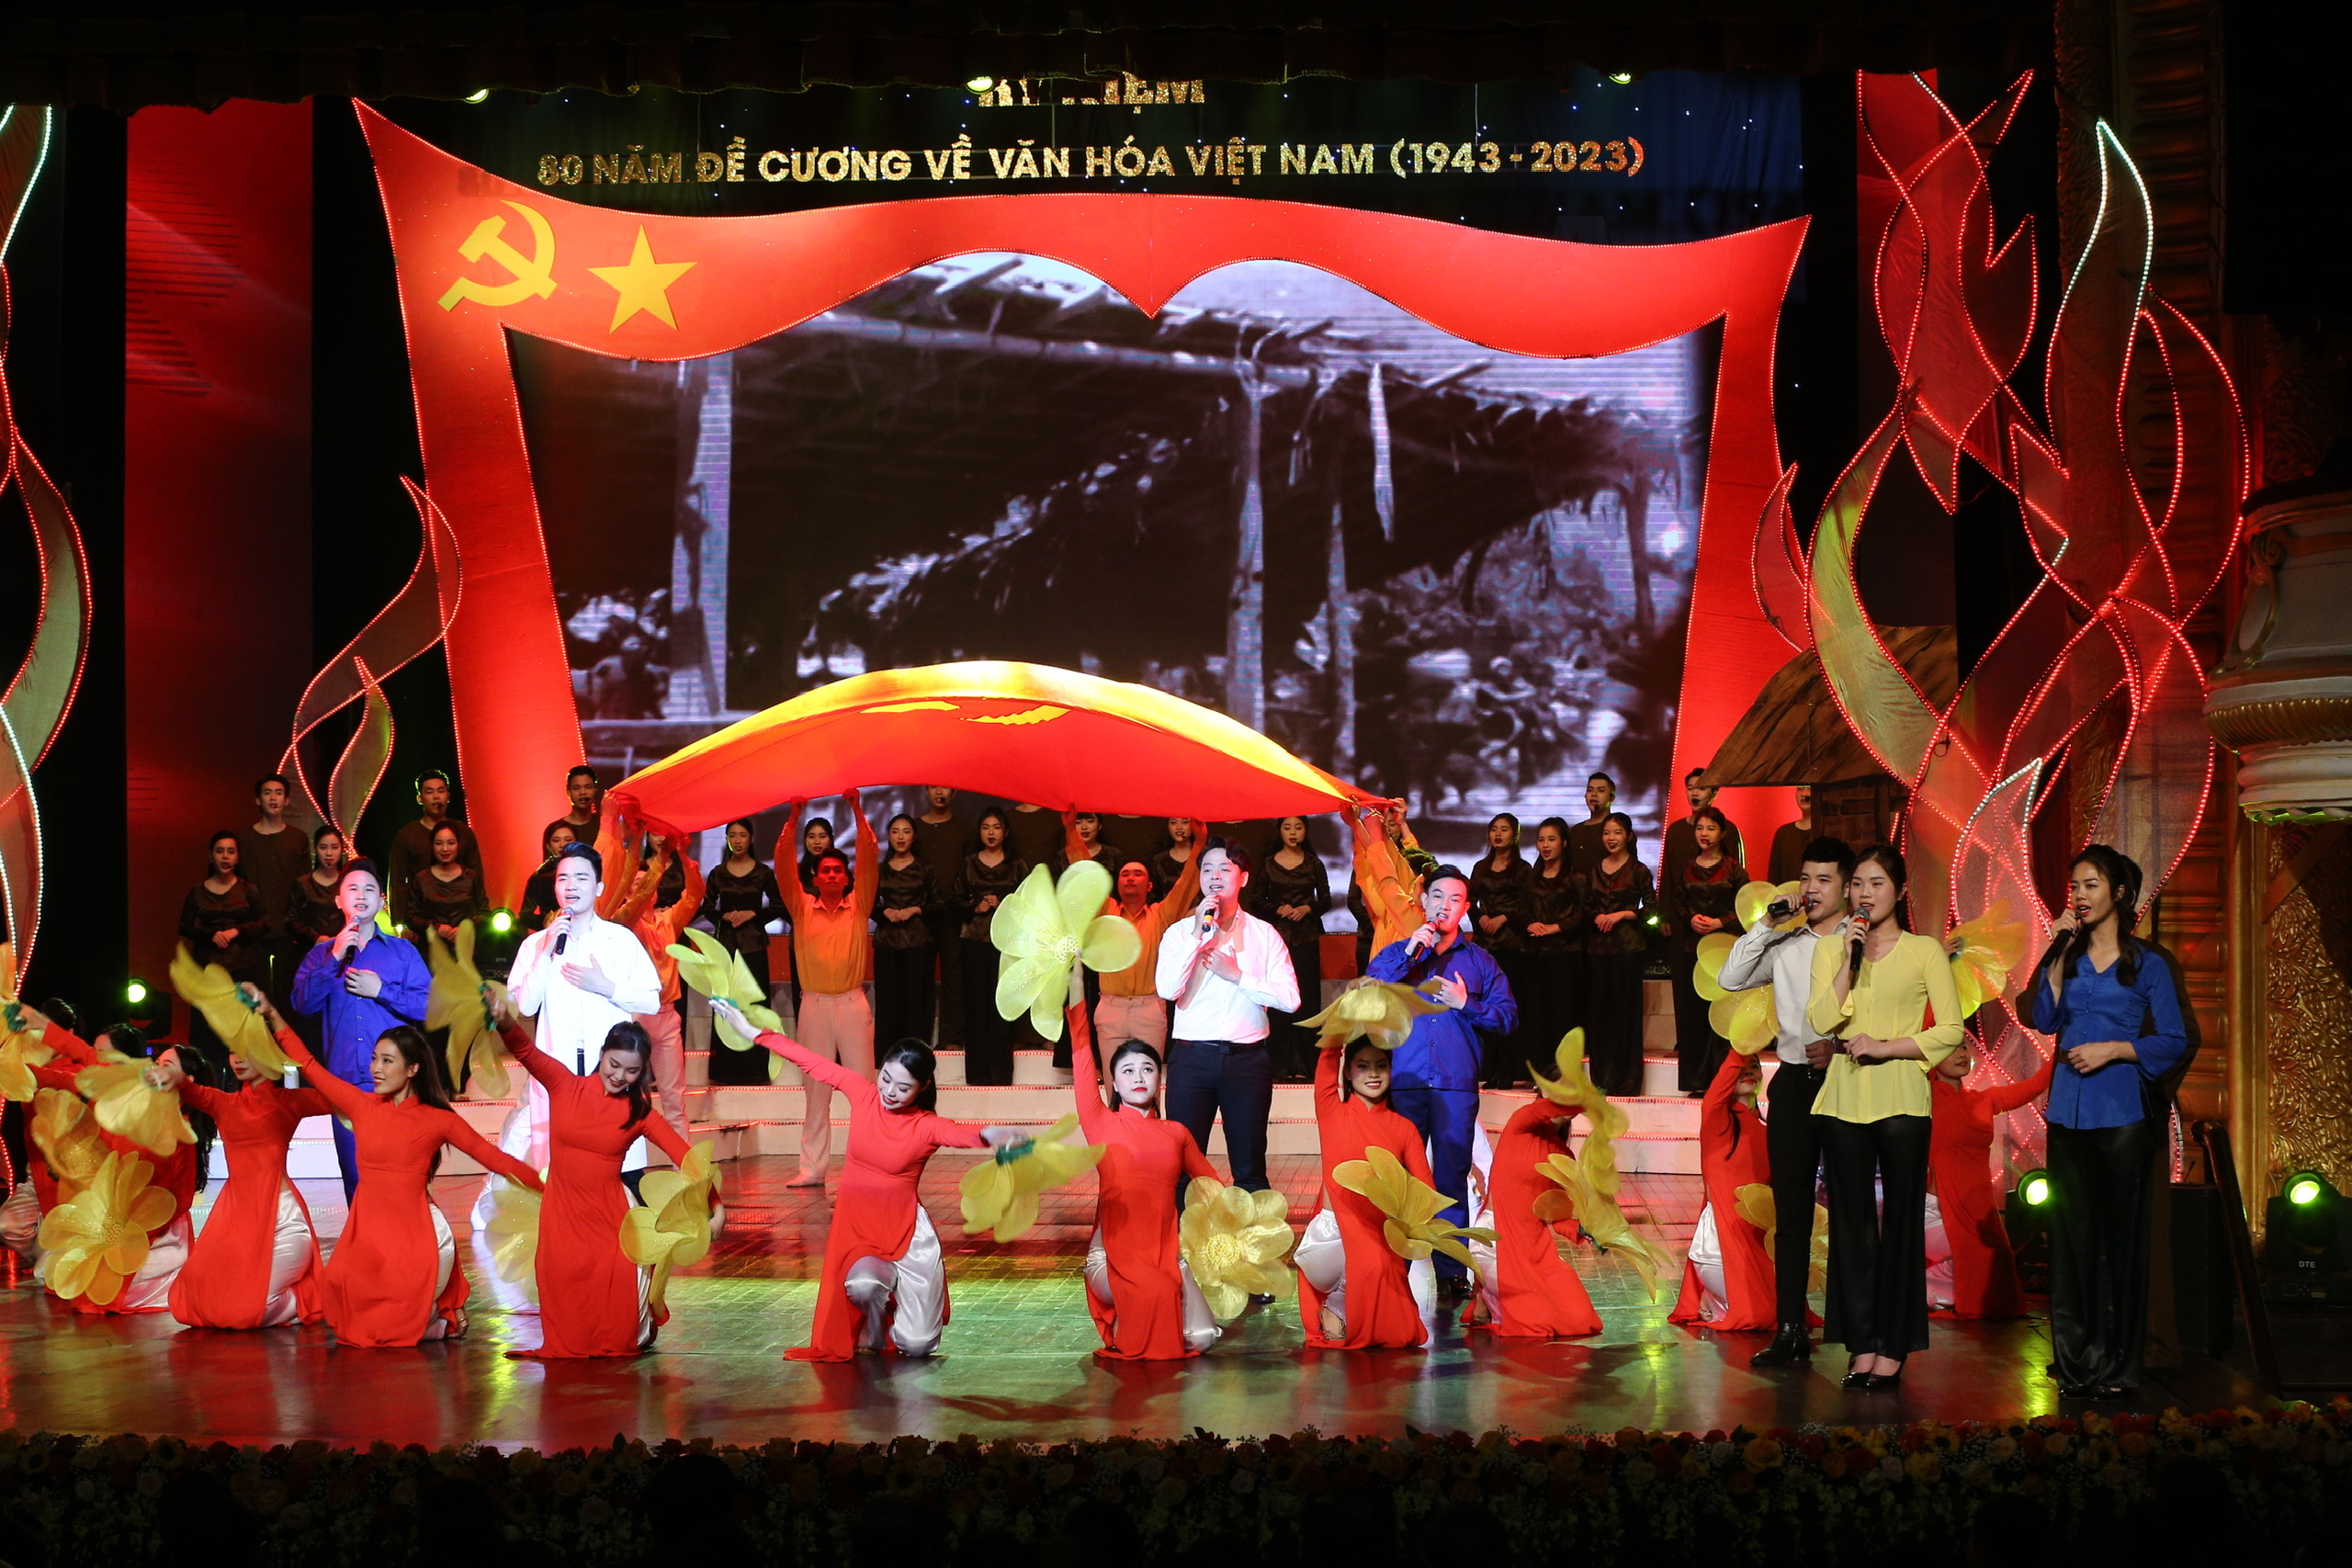 Nhìn lại 80 năm “Đề cương về văn hóa Việt Nam” bằng ngôn ngữ nghệ thuật - 11